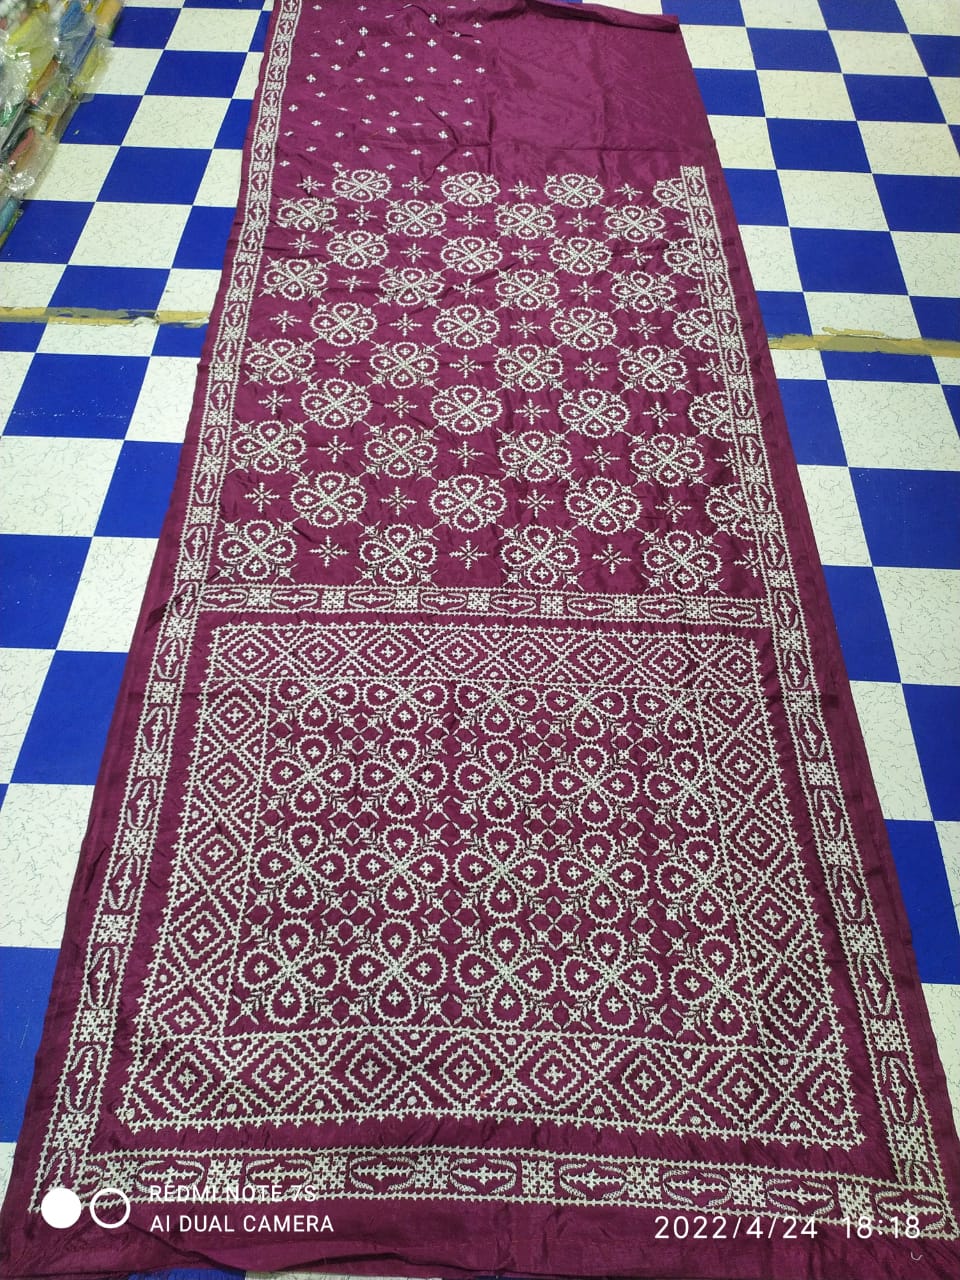 Gujrati Kantha stitched saree